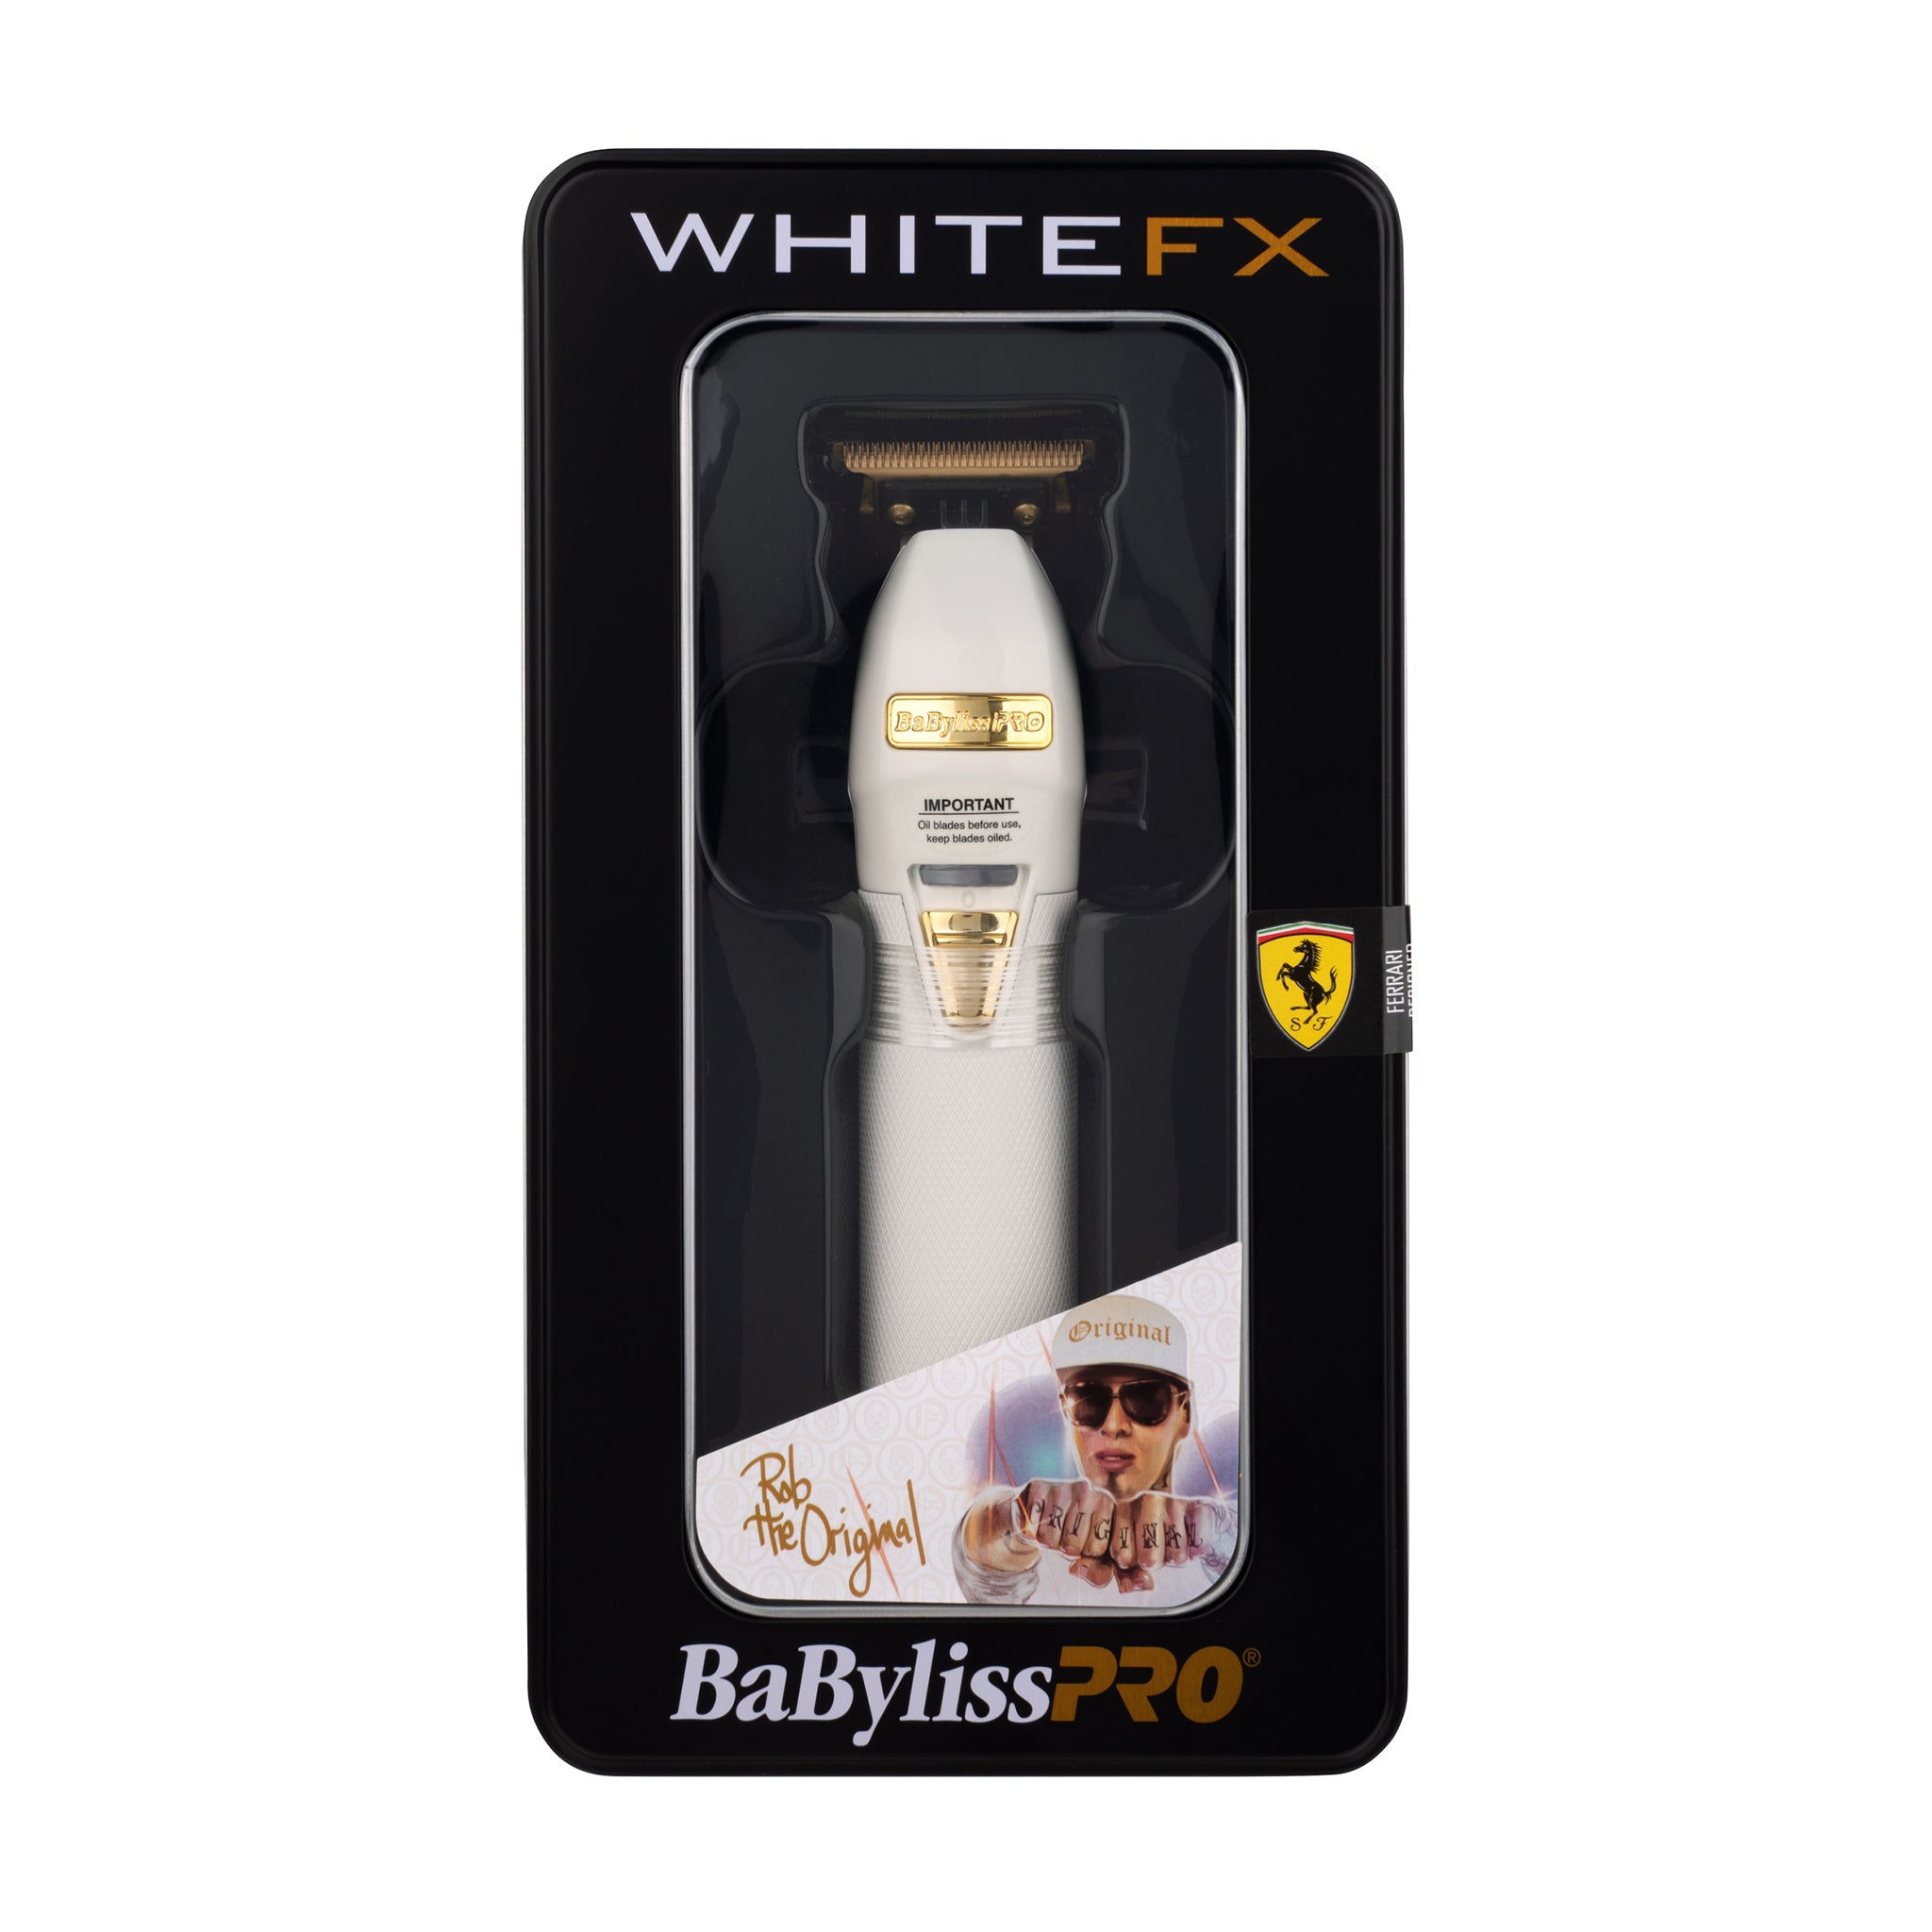 BabylissPRO WhiteFX Skeleton Lithium Hair Trimmer